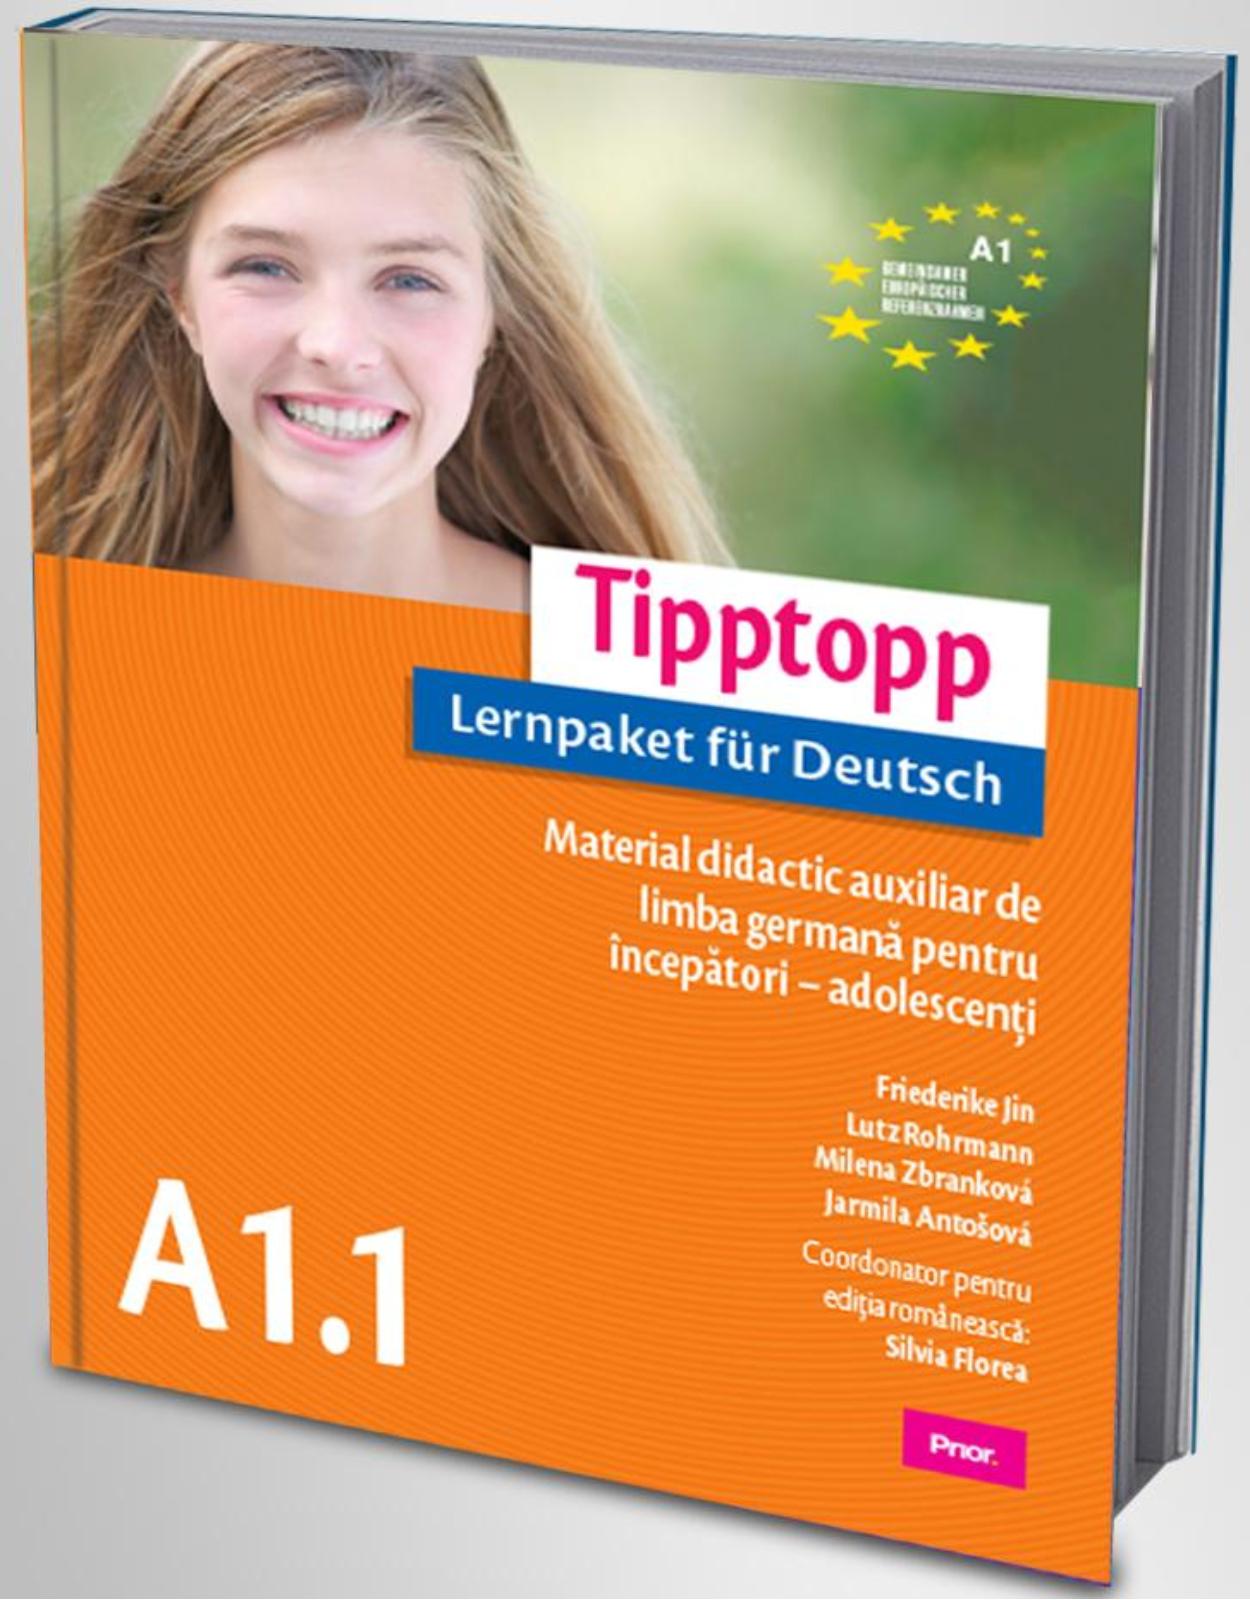 TippTopp A 1.1